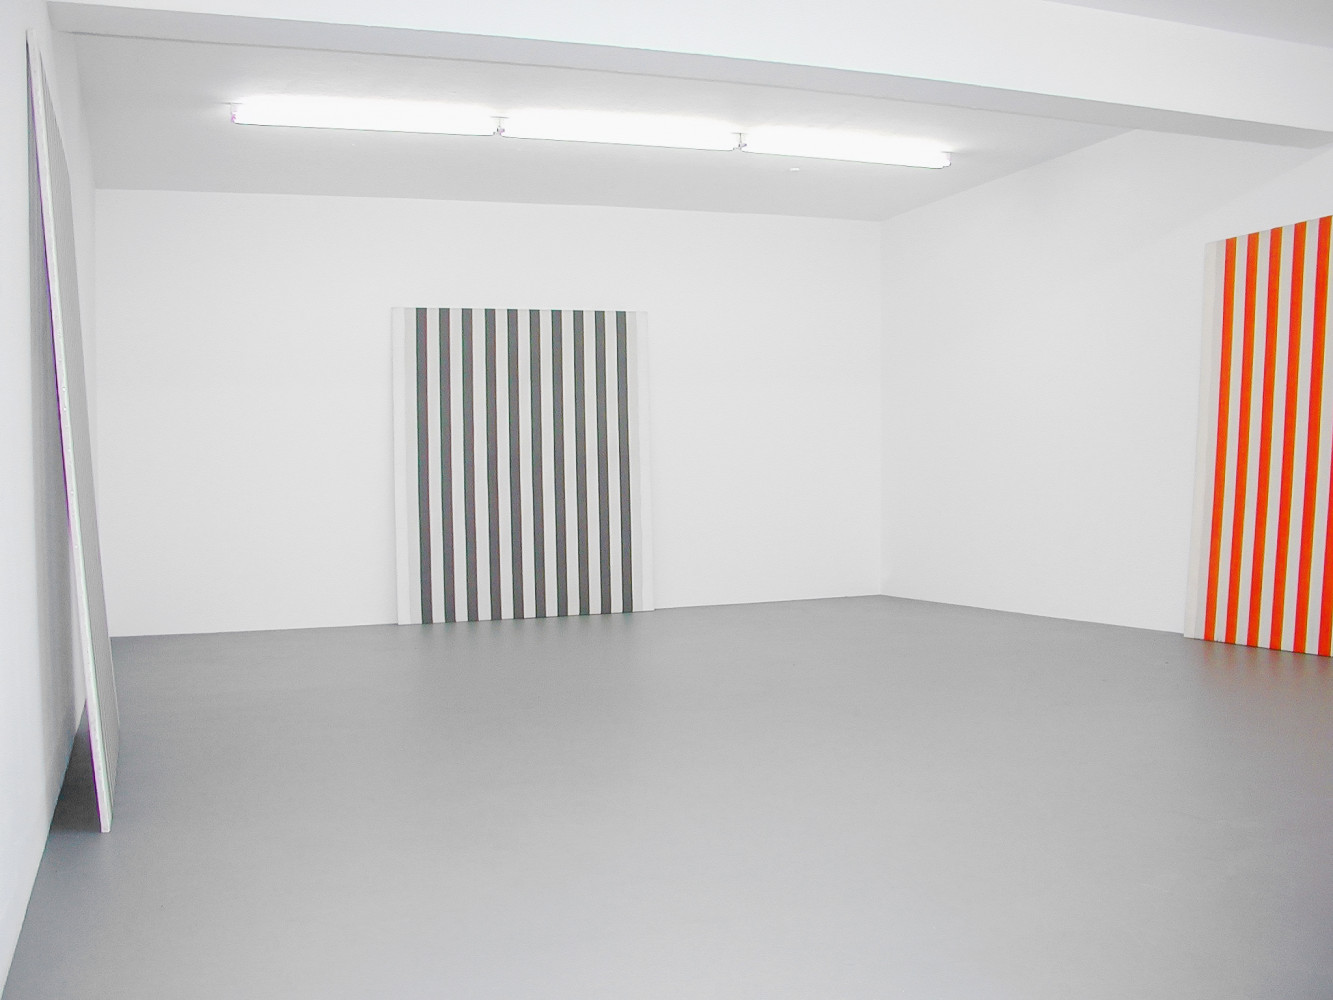 Daniel Buren, ‘Peinture blanche 1965 - 1966’, Installationsansicht, Buchmann Galerie Köln, 2002